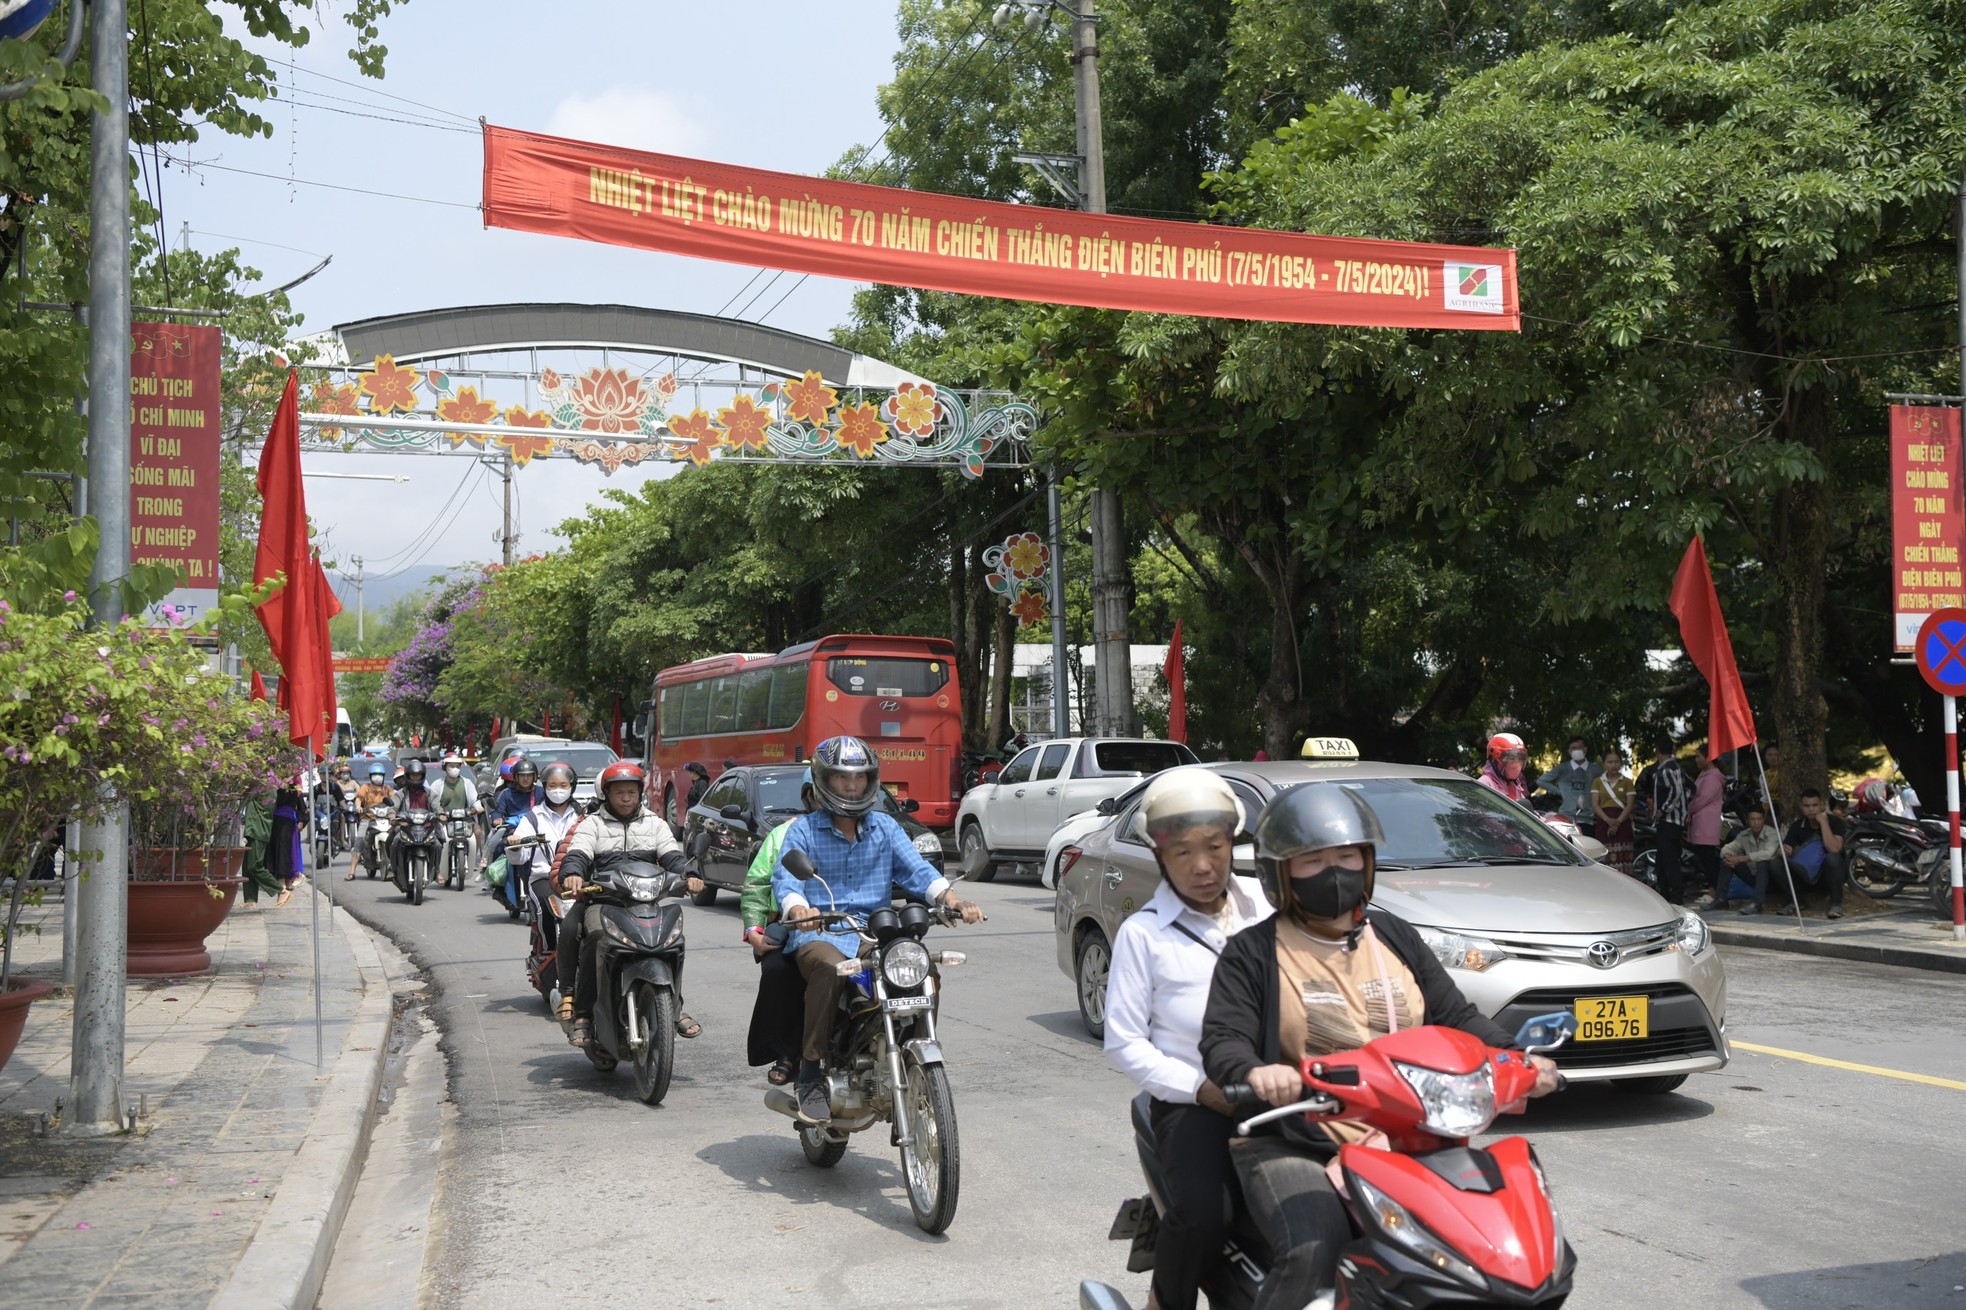 Điện Biên Phủ rực rỡ cờ hoa trước ngày diễu binh, diễu hành - Ảnh 1.